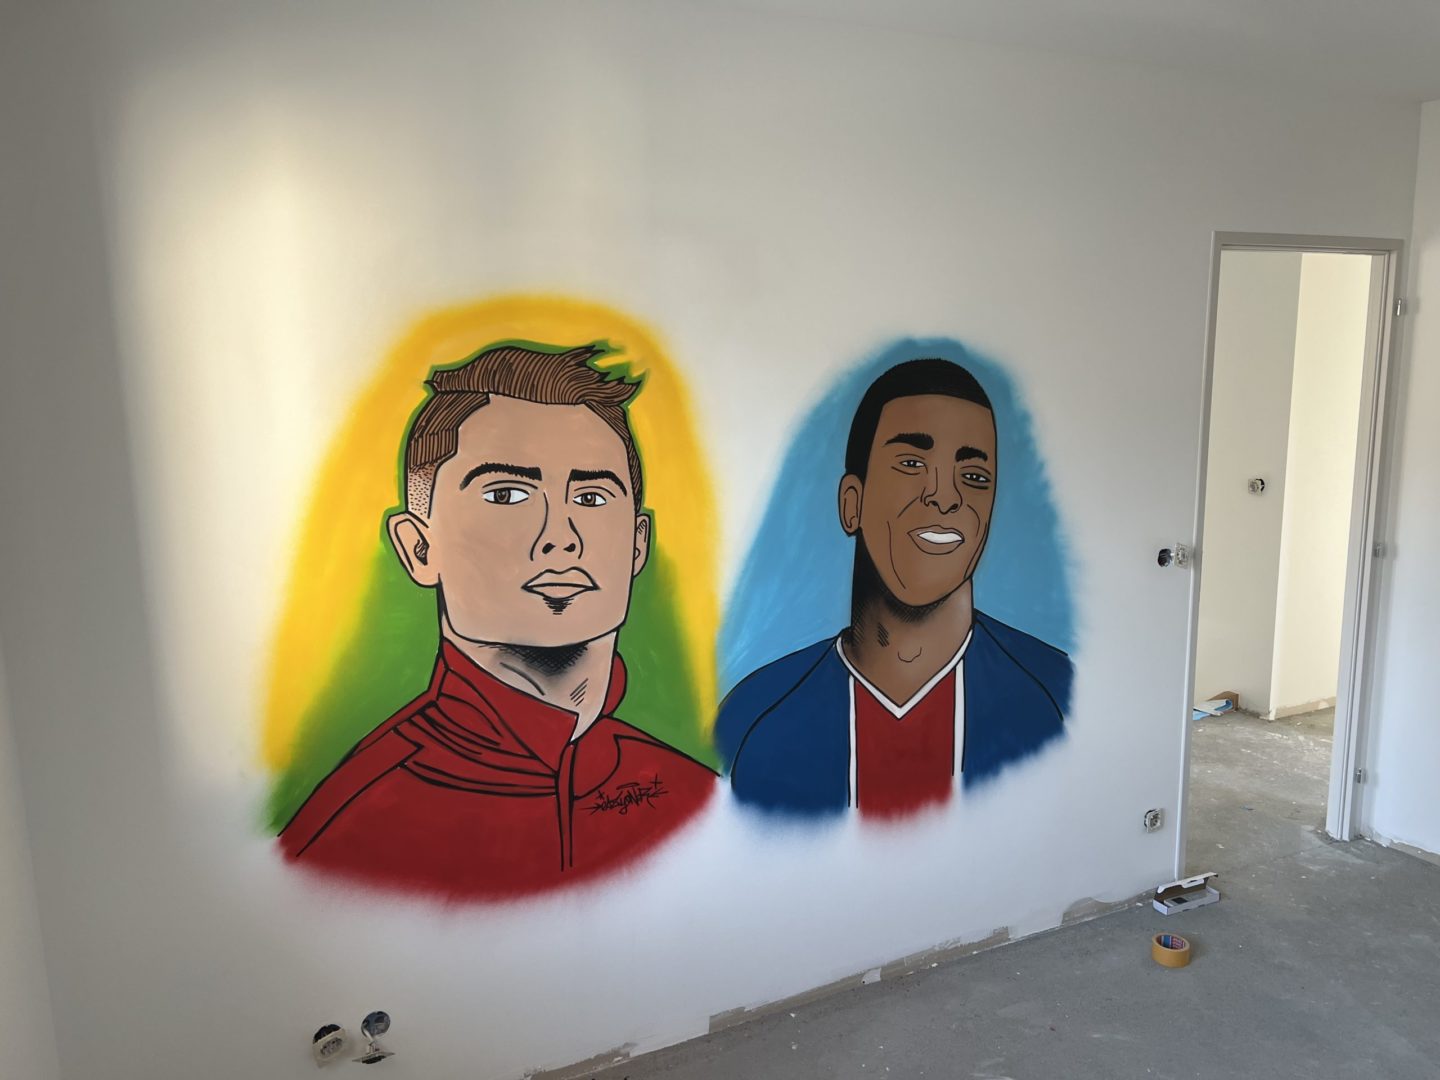 decoration graffiti chambr enfant portrait footballeur cristiano ronaldo kylian mbappe par le graffeur eazyone